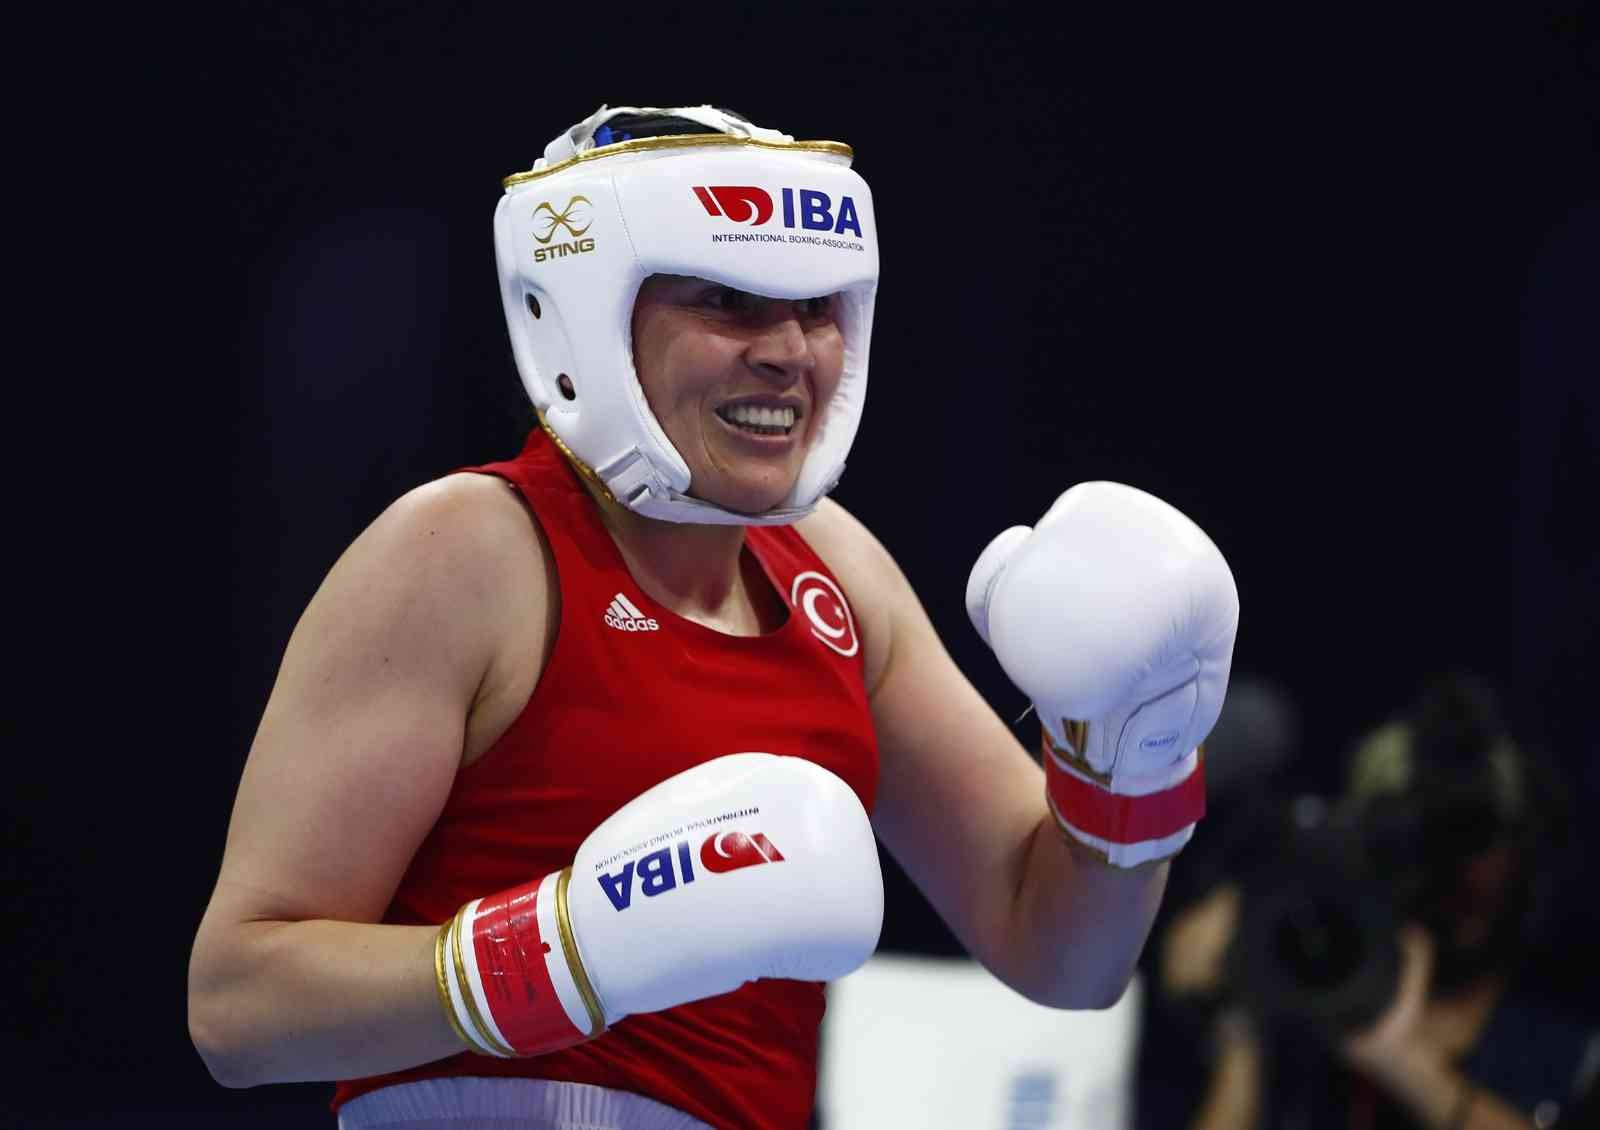 Türkiye’nin ev sahipliğinde düzenlenen Dünya Kadınlar Boks Şampiyonası’nda +81 kiloda mücadele eden Şennur Demir, final maçını kazanarak dünya ...